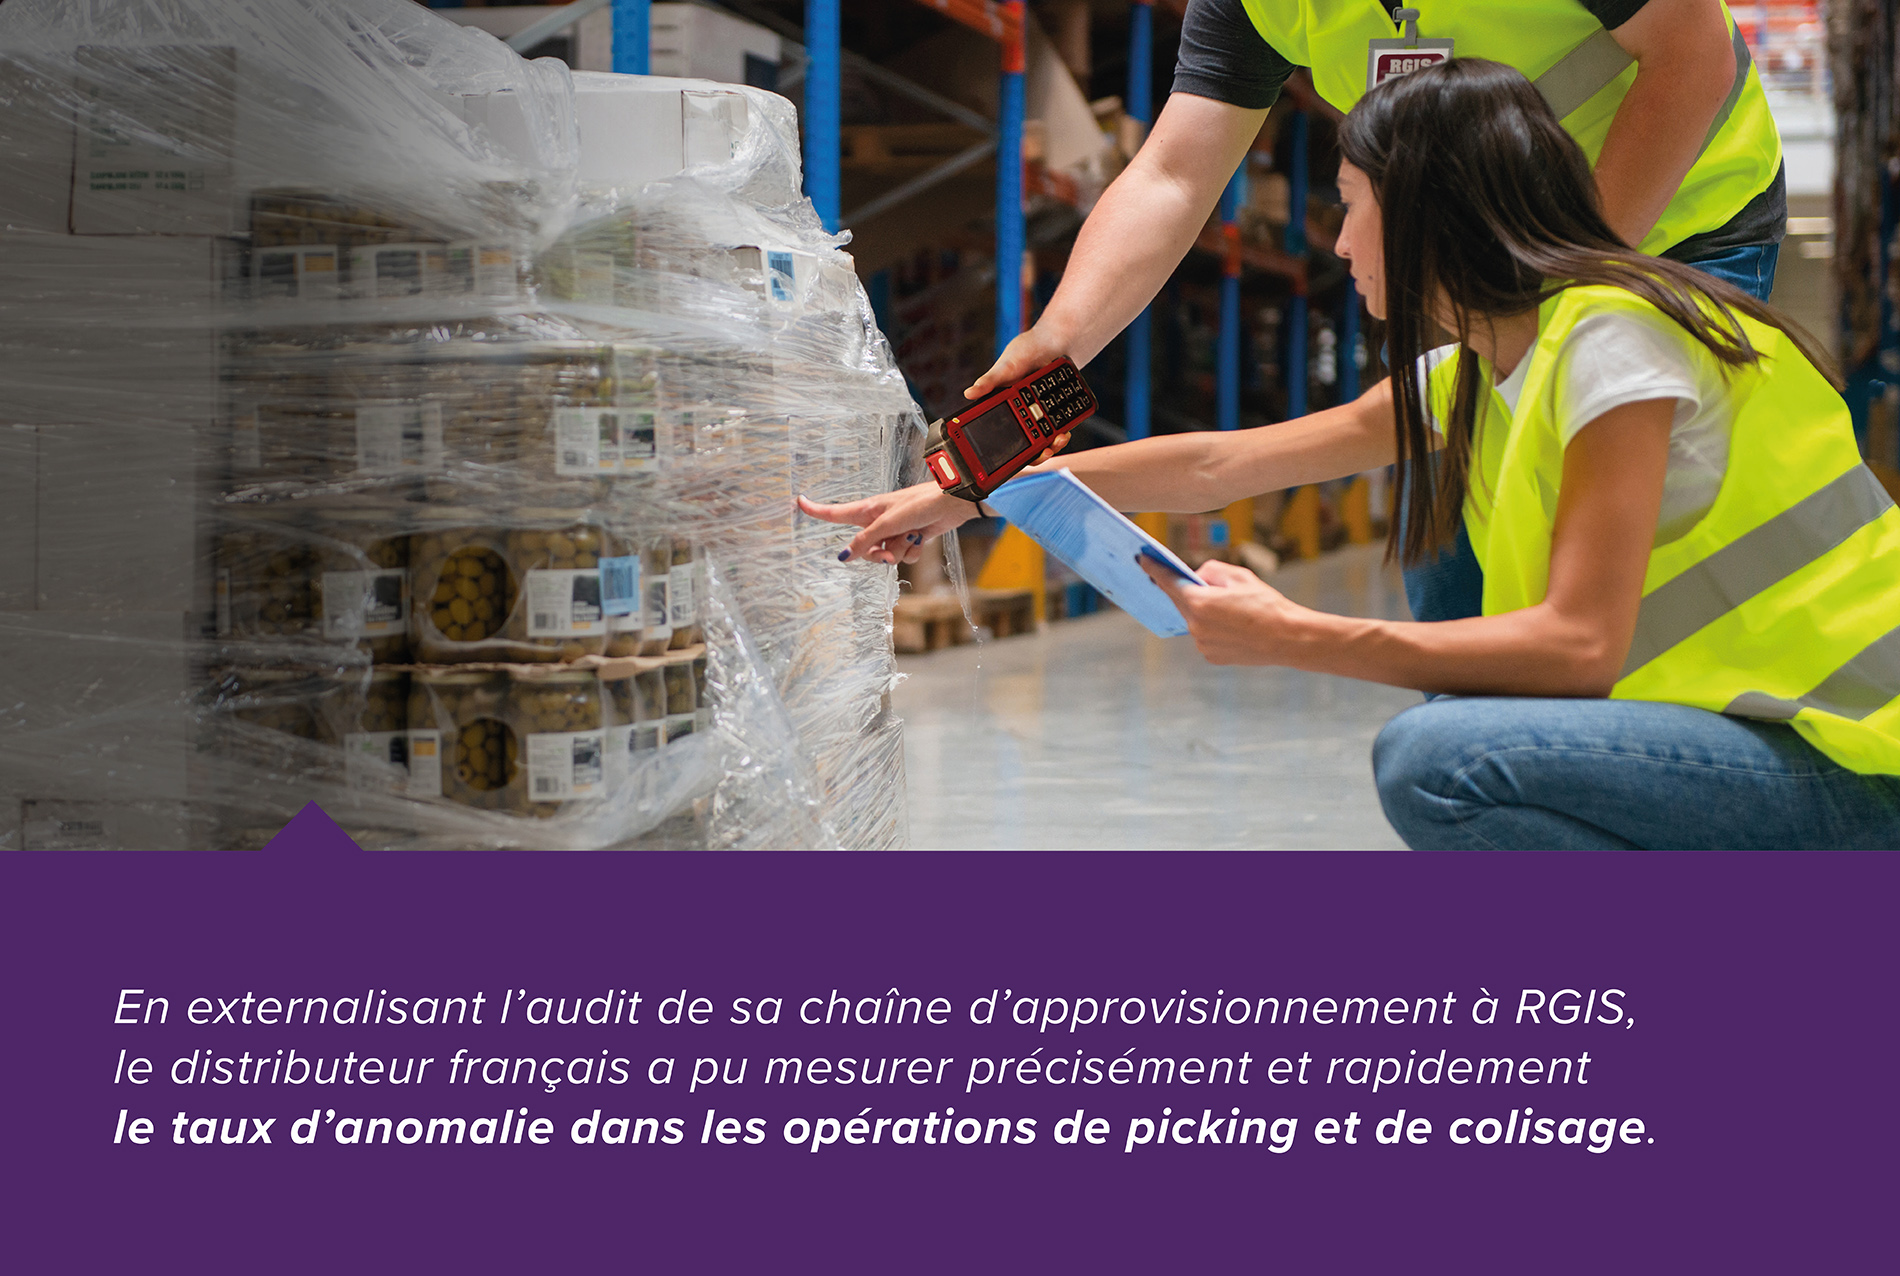 En extarnalisant laudit de sa chaine d'approvisionnement à RGIS, le distributeur français a pu mesurer précisément et rapidement le taux d'anomalie dans les opérations de picking et de colisage